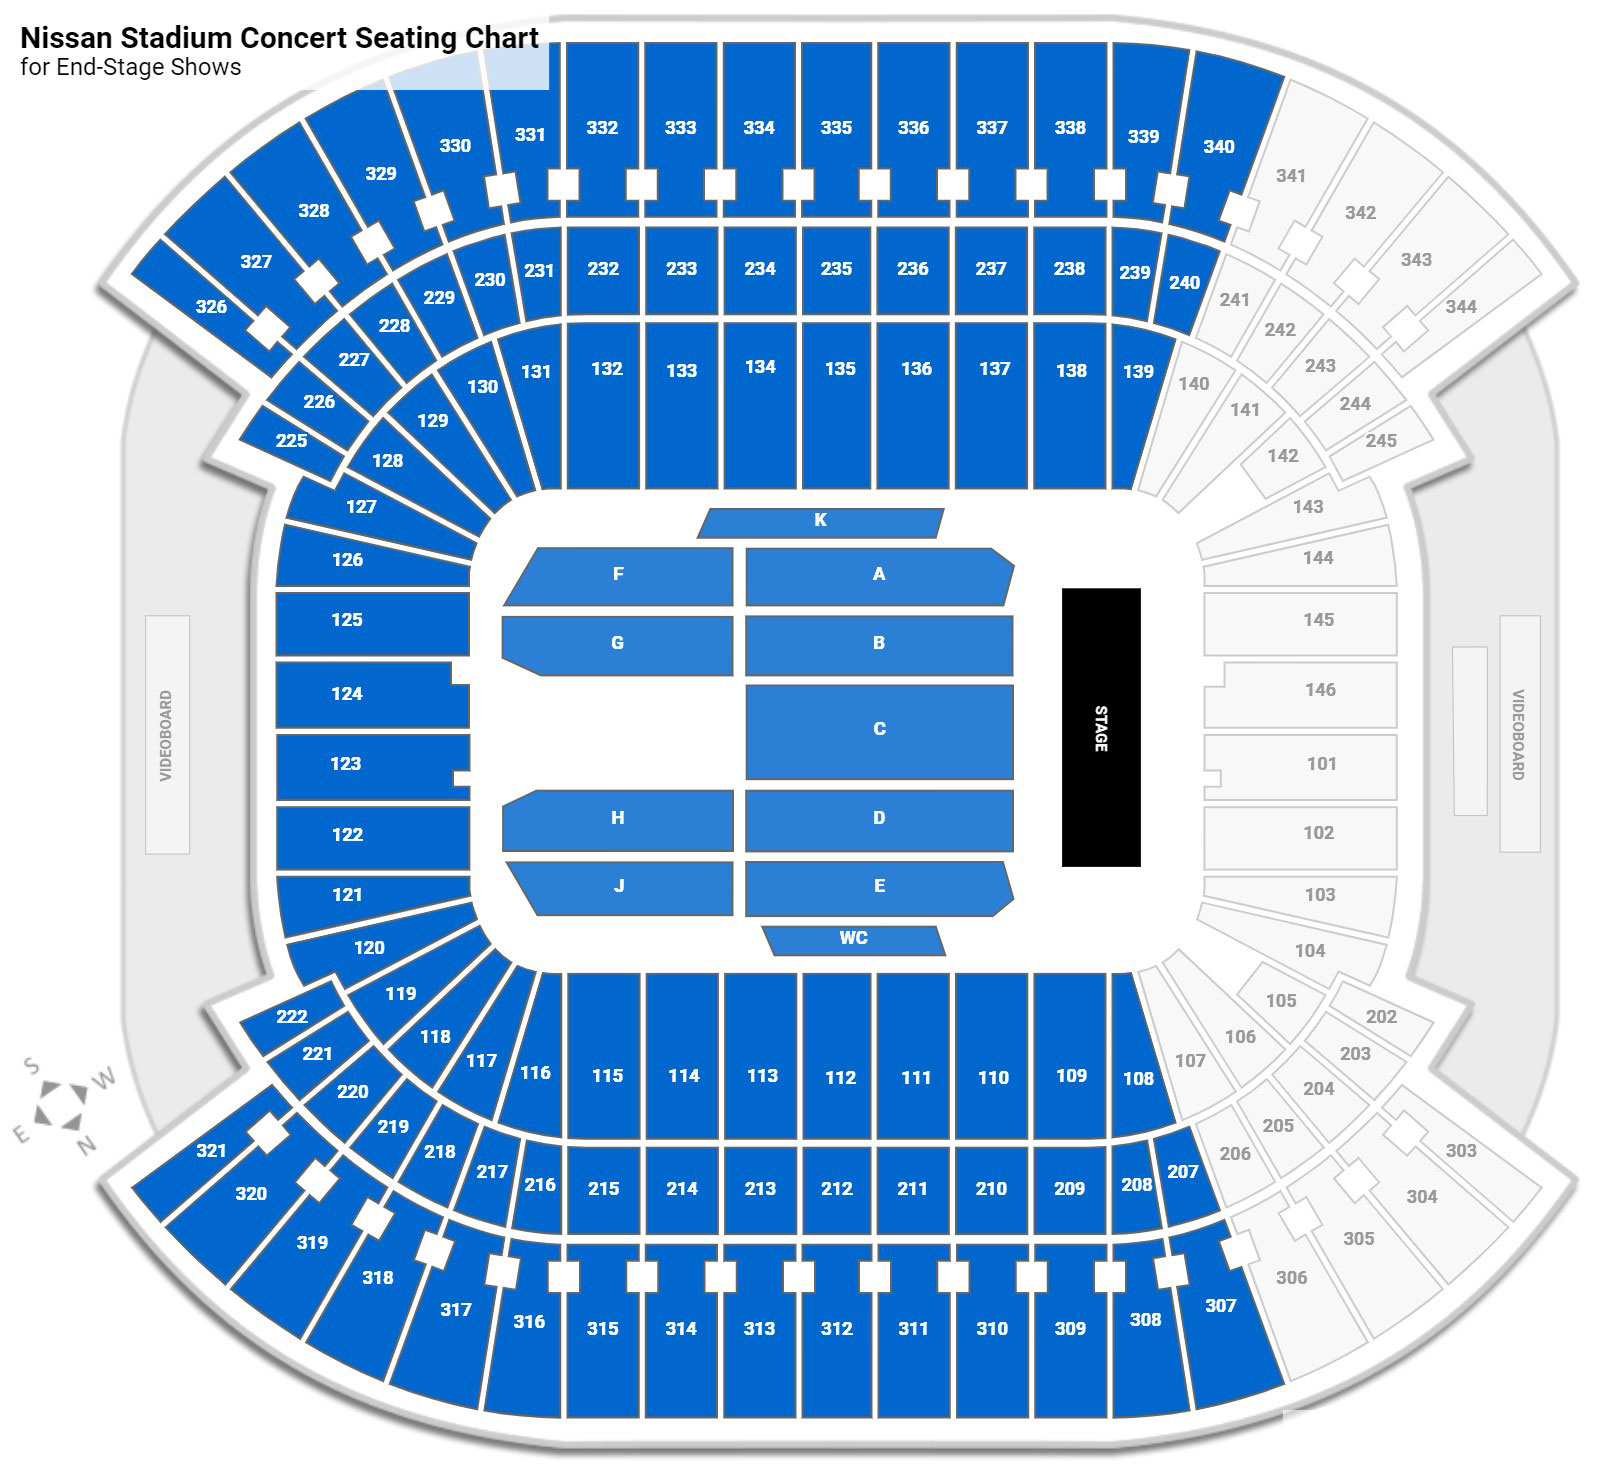 Nissan Stadium seating plan